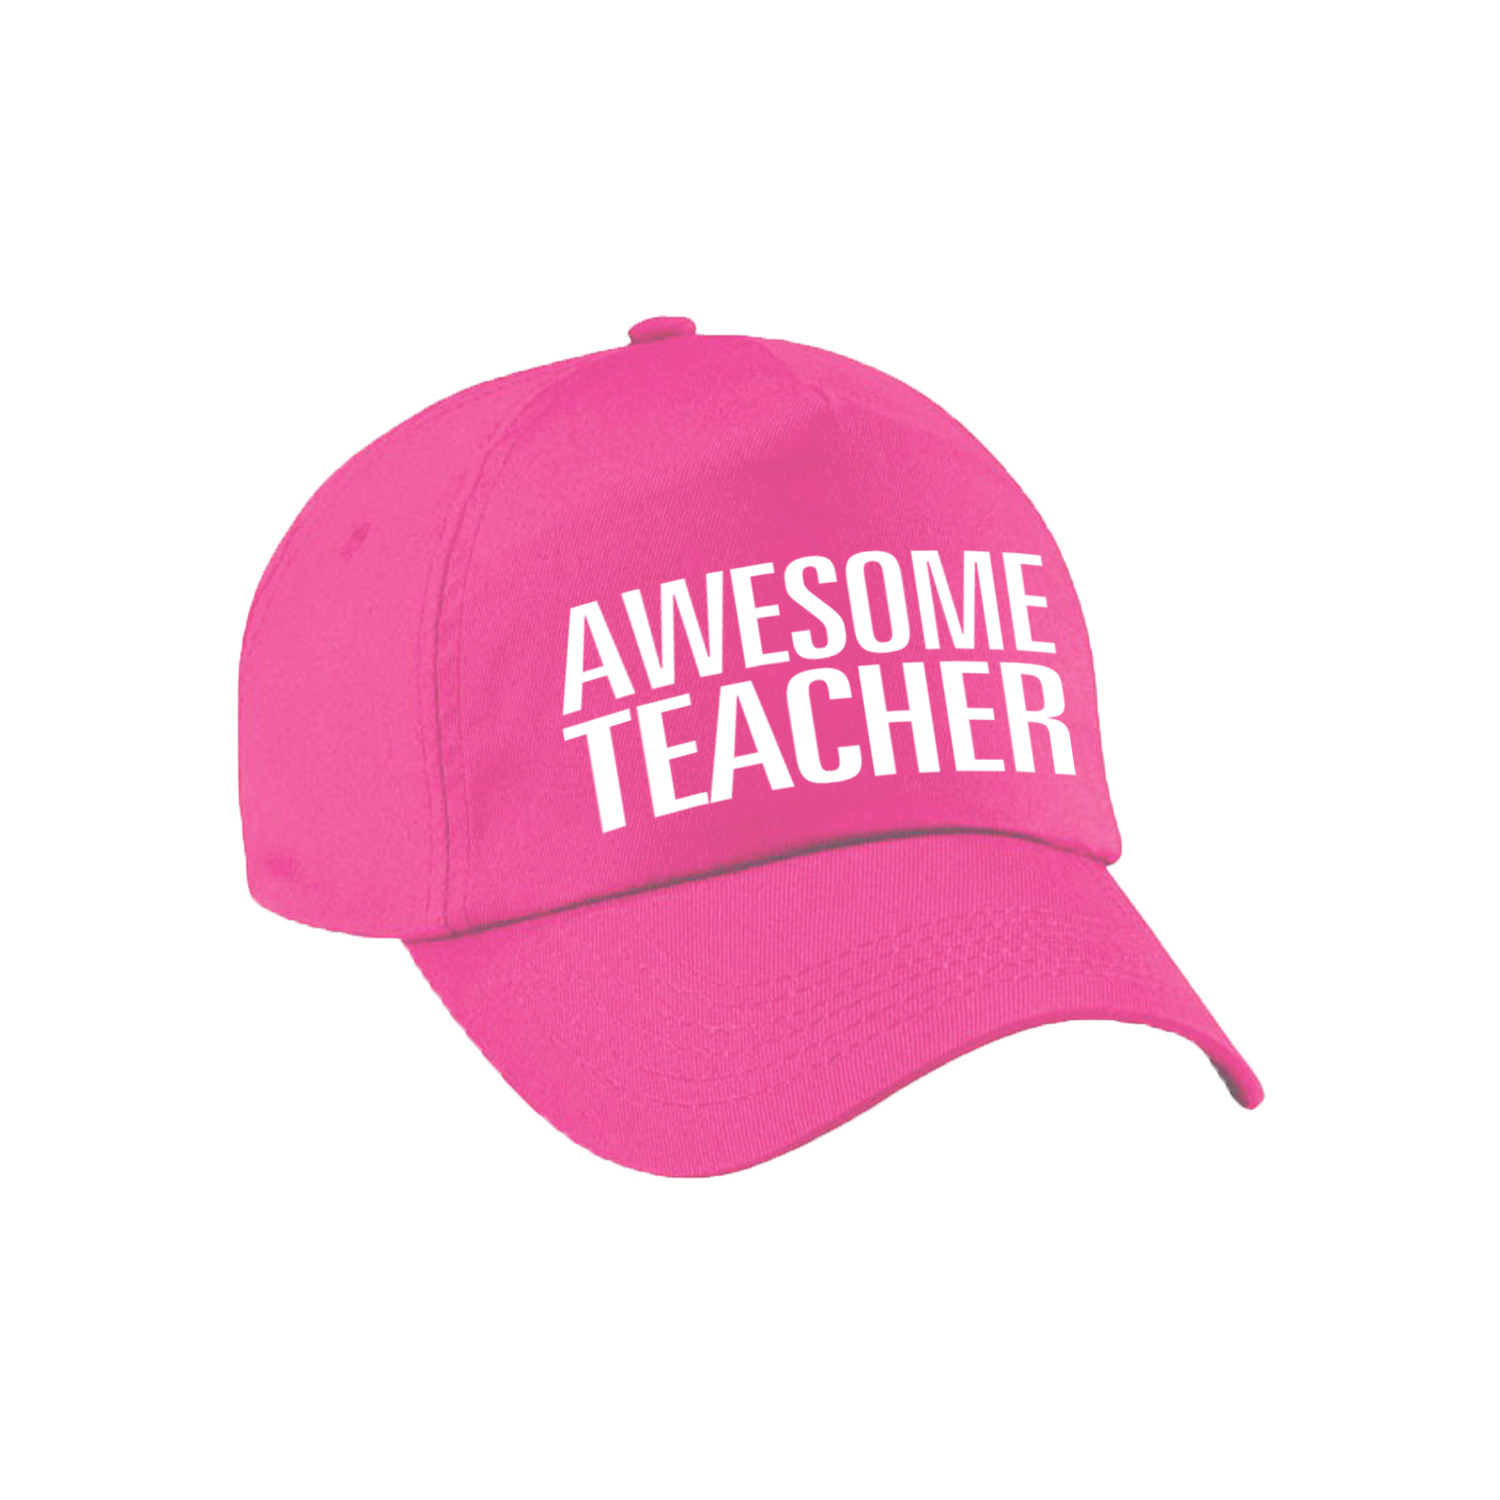 Awesome teacher cadeau pet / cap voor juf / meester roze voor dames en heren Top Merken Winkel